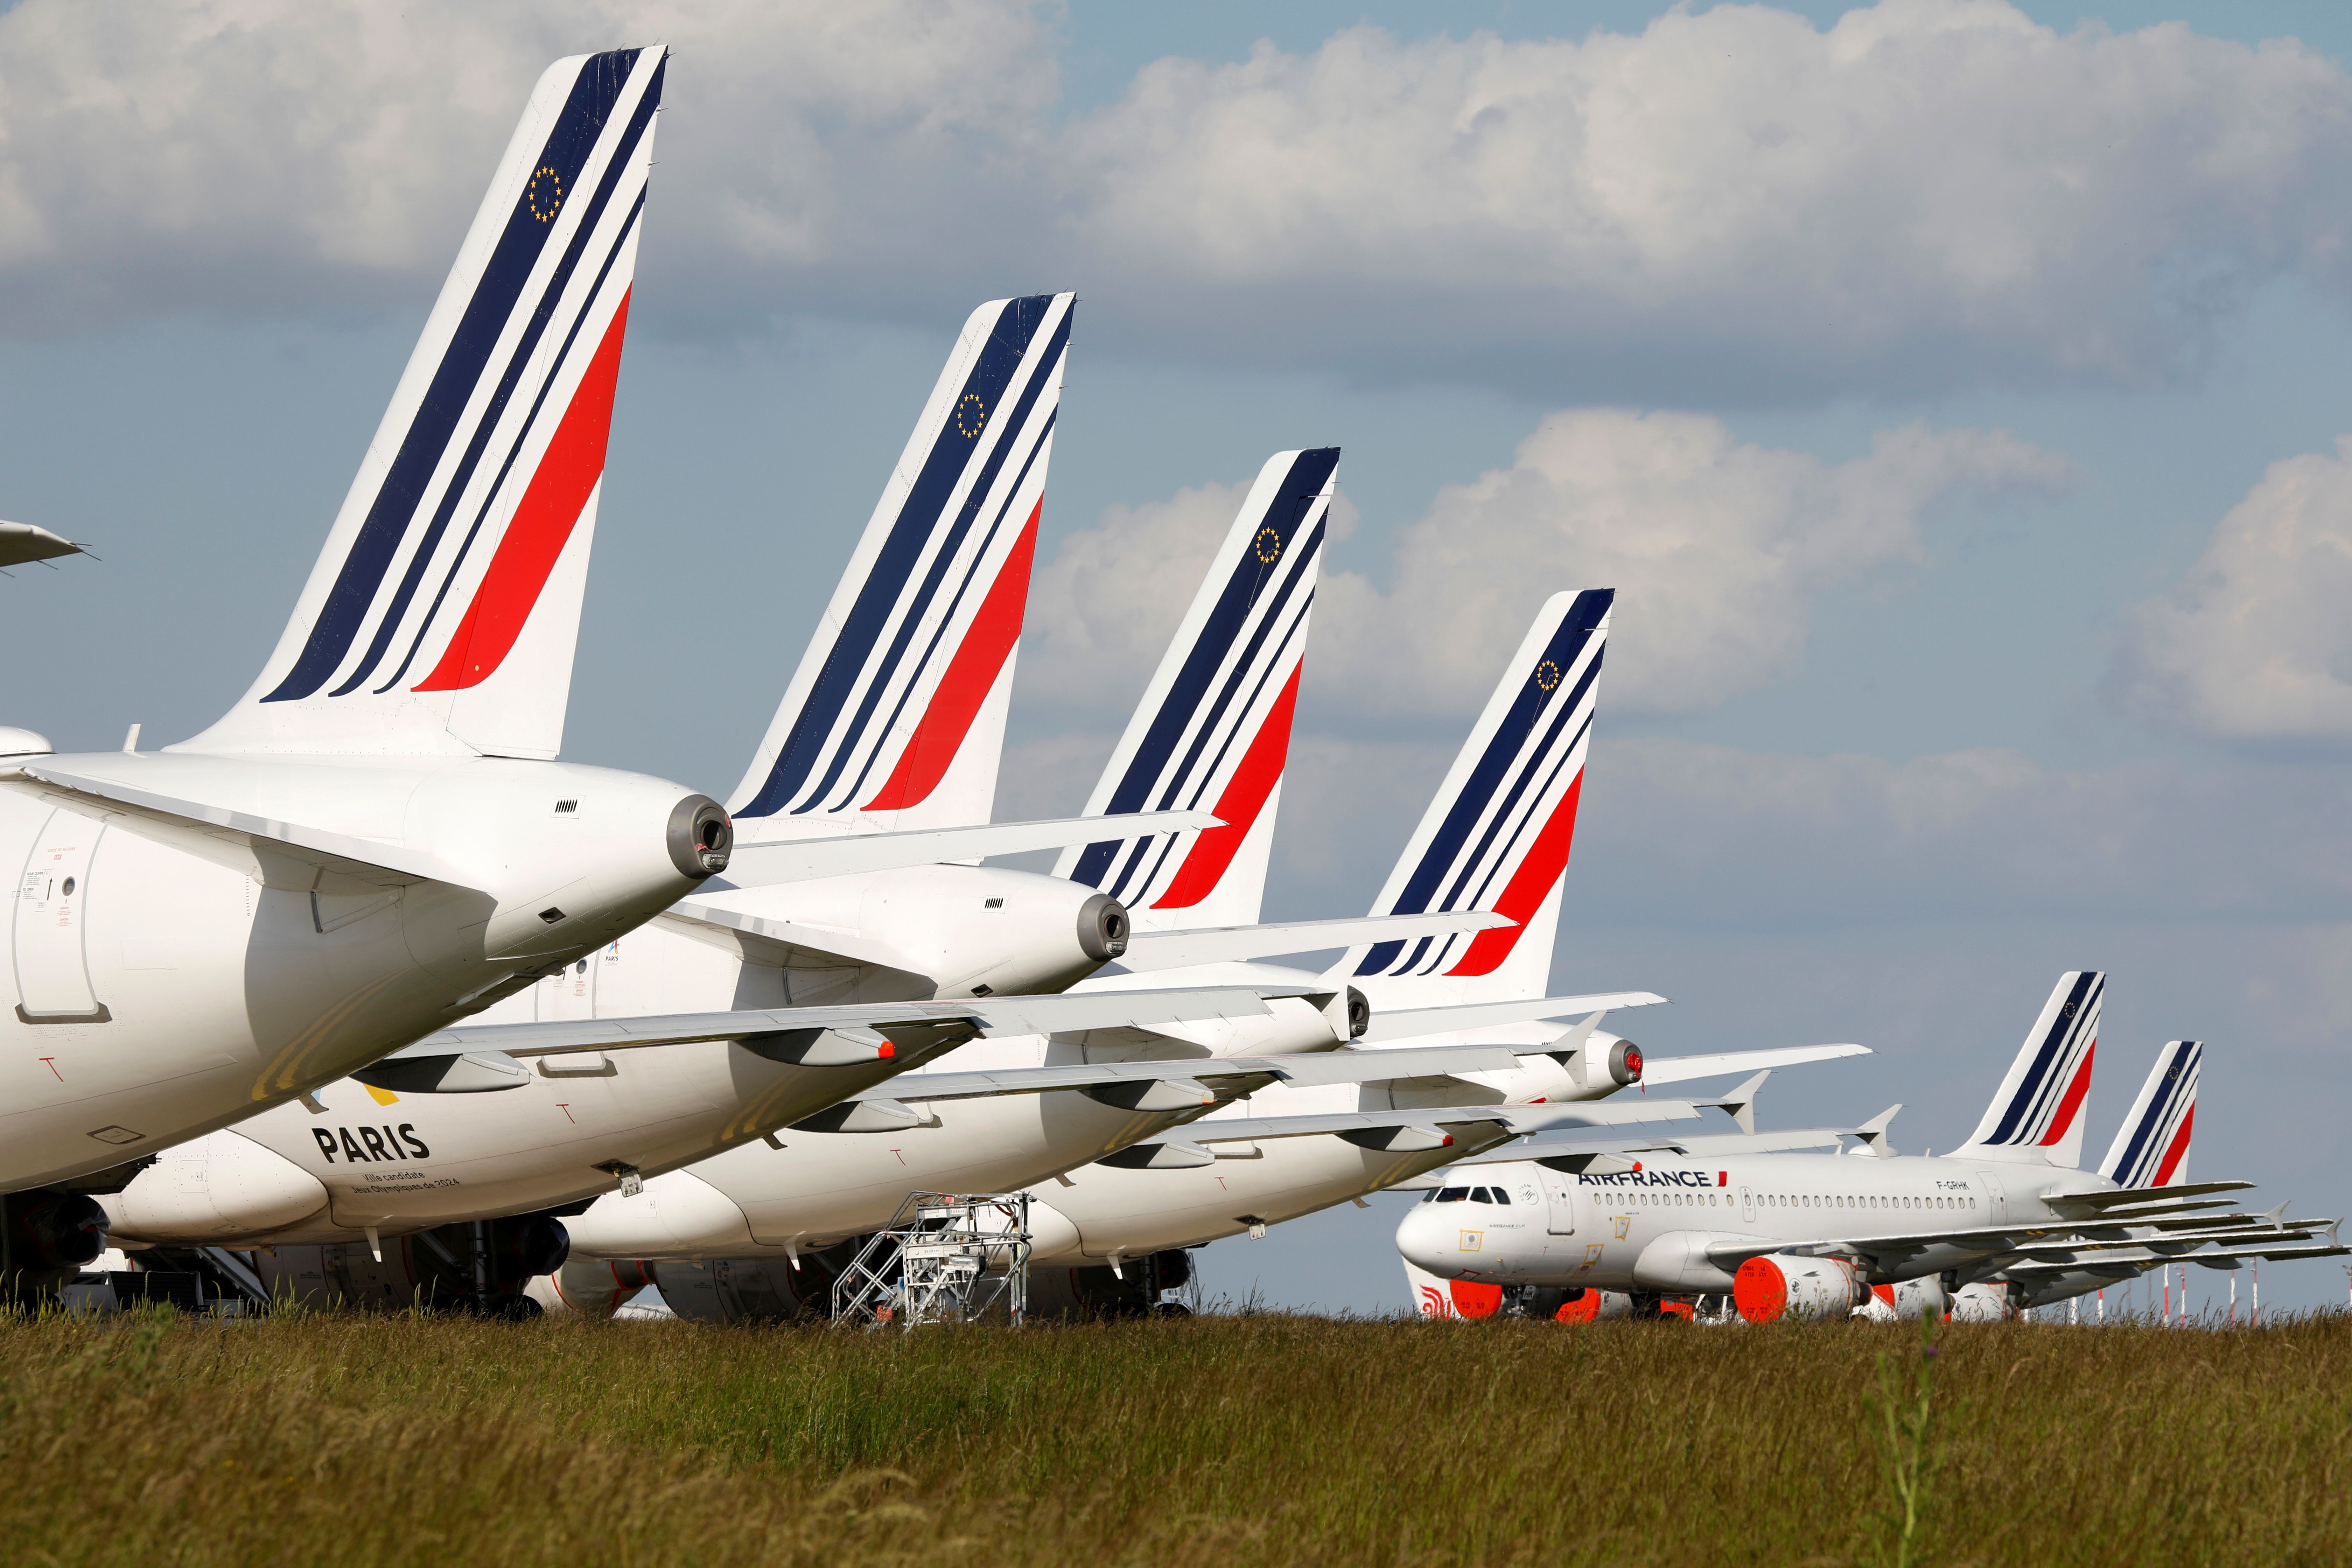 Des avions d'Air France sur le tarmac de l'aéroport Roissy-Charles de Gaulle, le 25 mai